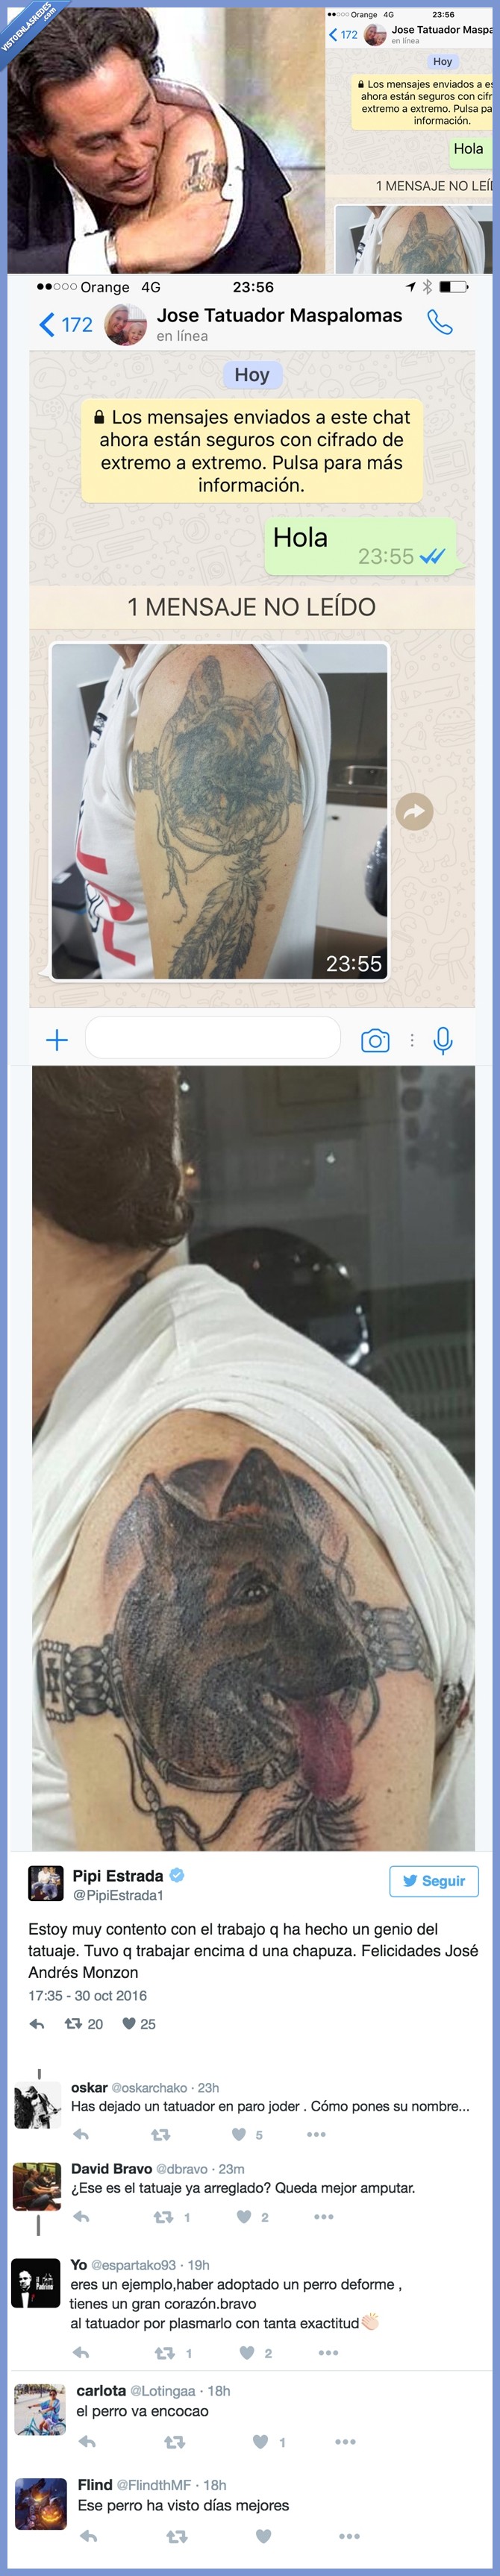 fail,famoso,pipi estrada,tatuaje